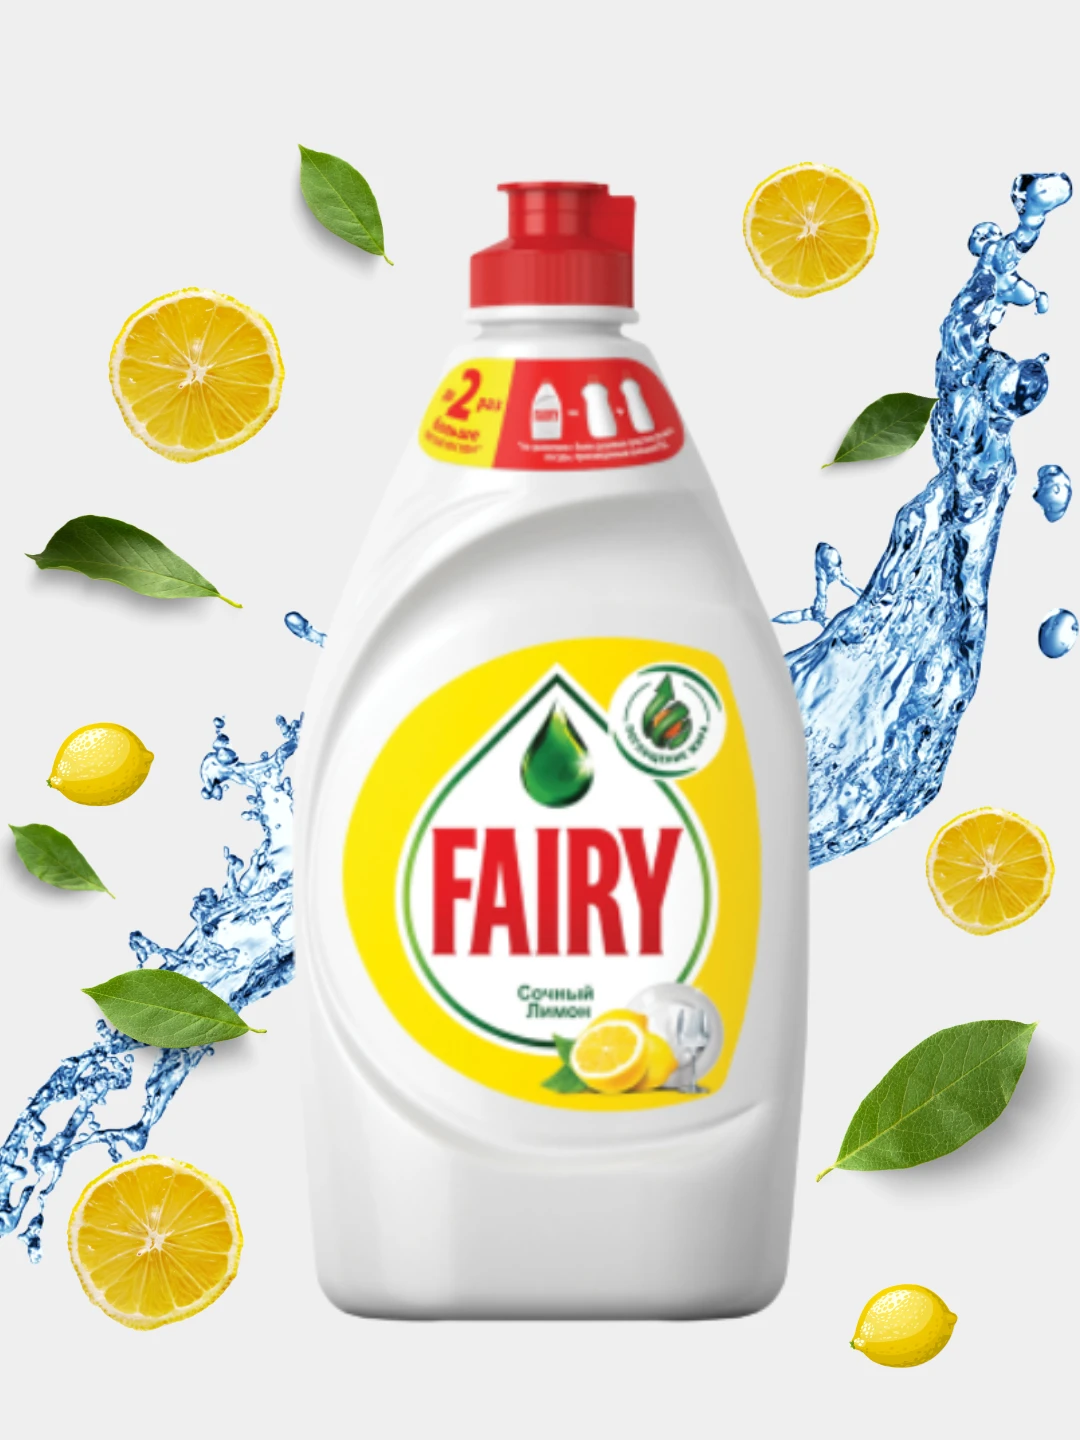 Fairy средство для мытья посуды сочный. Fairy сочный лимон 450 мл. Ср-во д/посуды "Фейри " лимон 450мл. Fairy жидкость для мытья посуды Lemon 450мл. Фейри 450 мл.